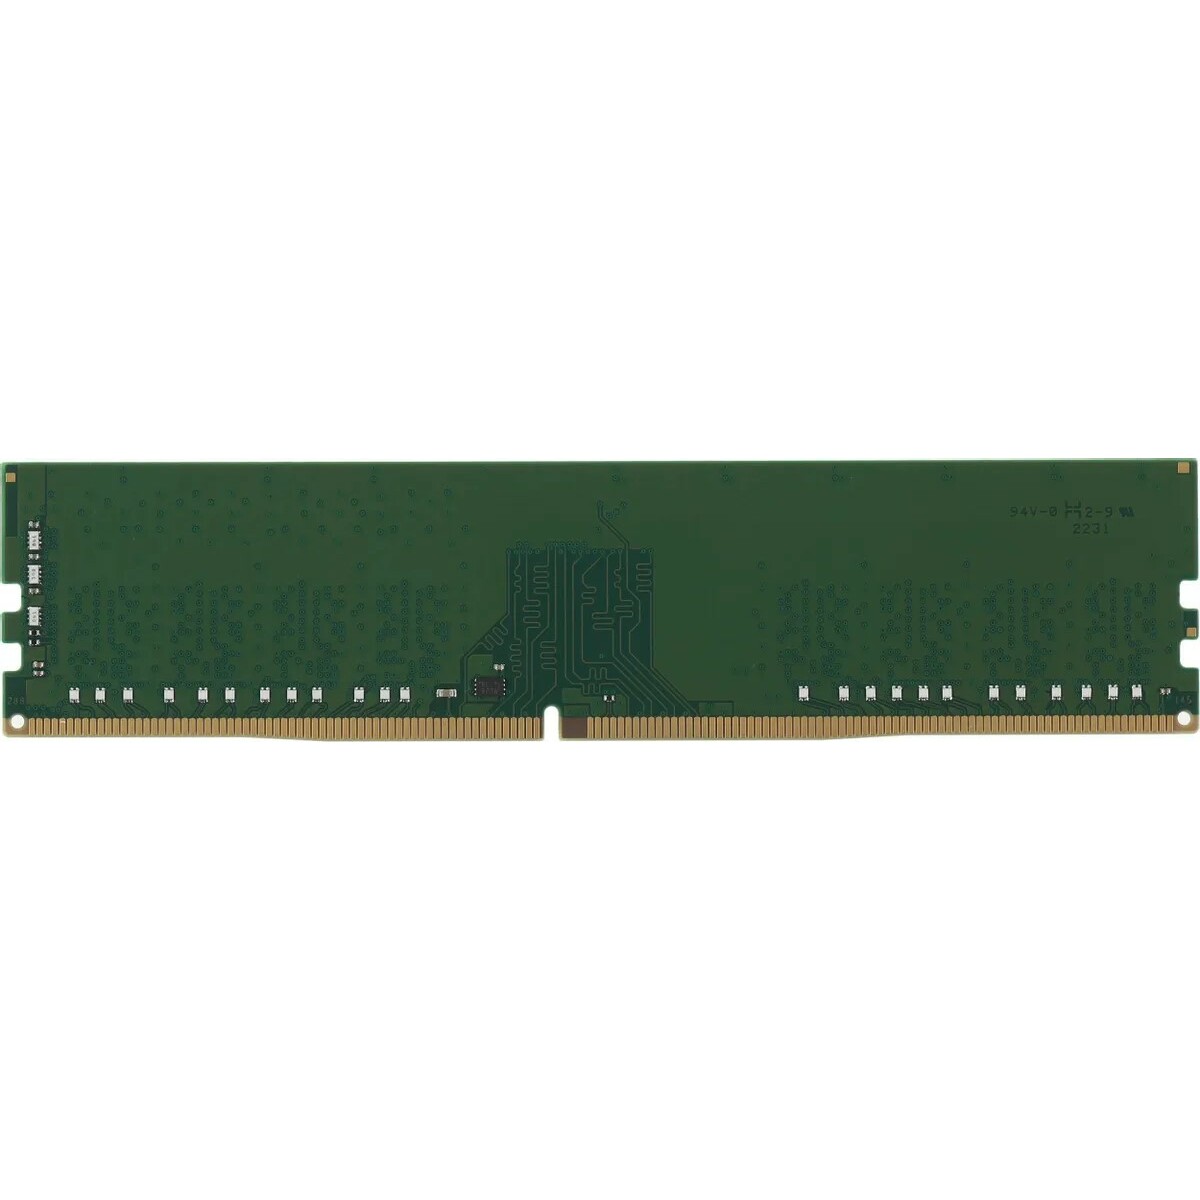 Память DDR4 16Gb 2666MHz Kingston KVR26N19S8/16